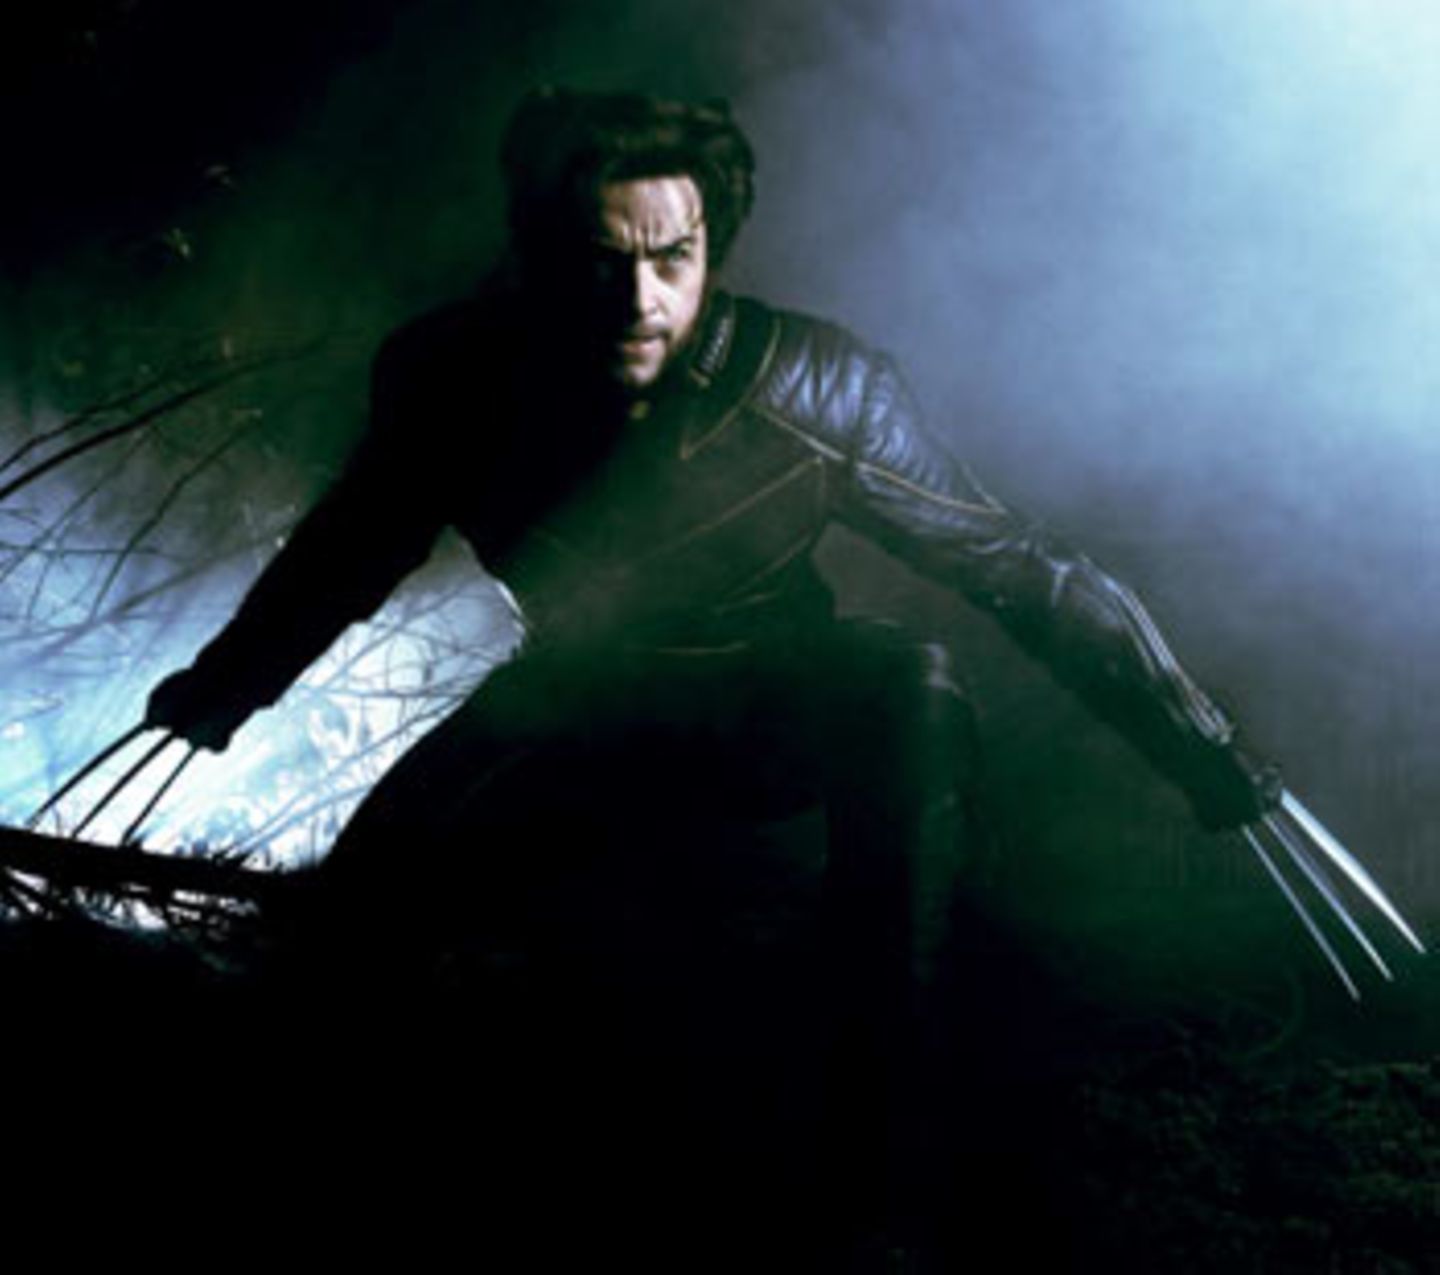 Wolverine (Hugh Jackman), der Mann mit den Krallen. Wer am liebsten wild im Wald wär, ist nicht die erste Wahl für einen Schuldirektorposten. Trotzdem zeigt er in diesem Film Anführerqualitäten. Und von Jackman würde man sich vermutlich auch trotz überlanger metallischer Fingernägel umarmen lassen